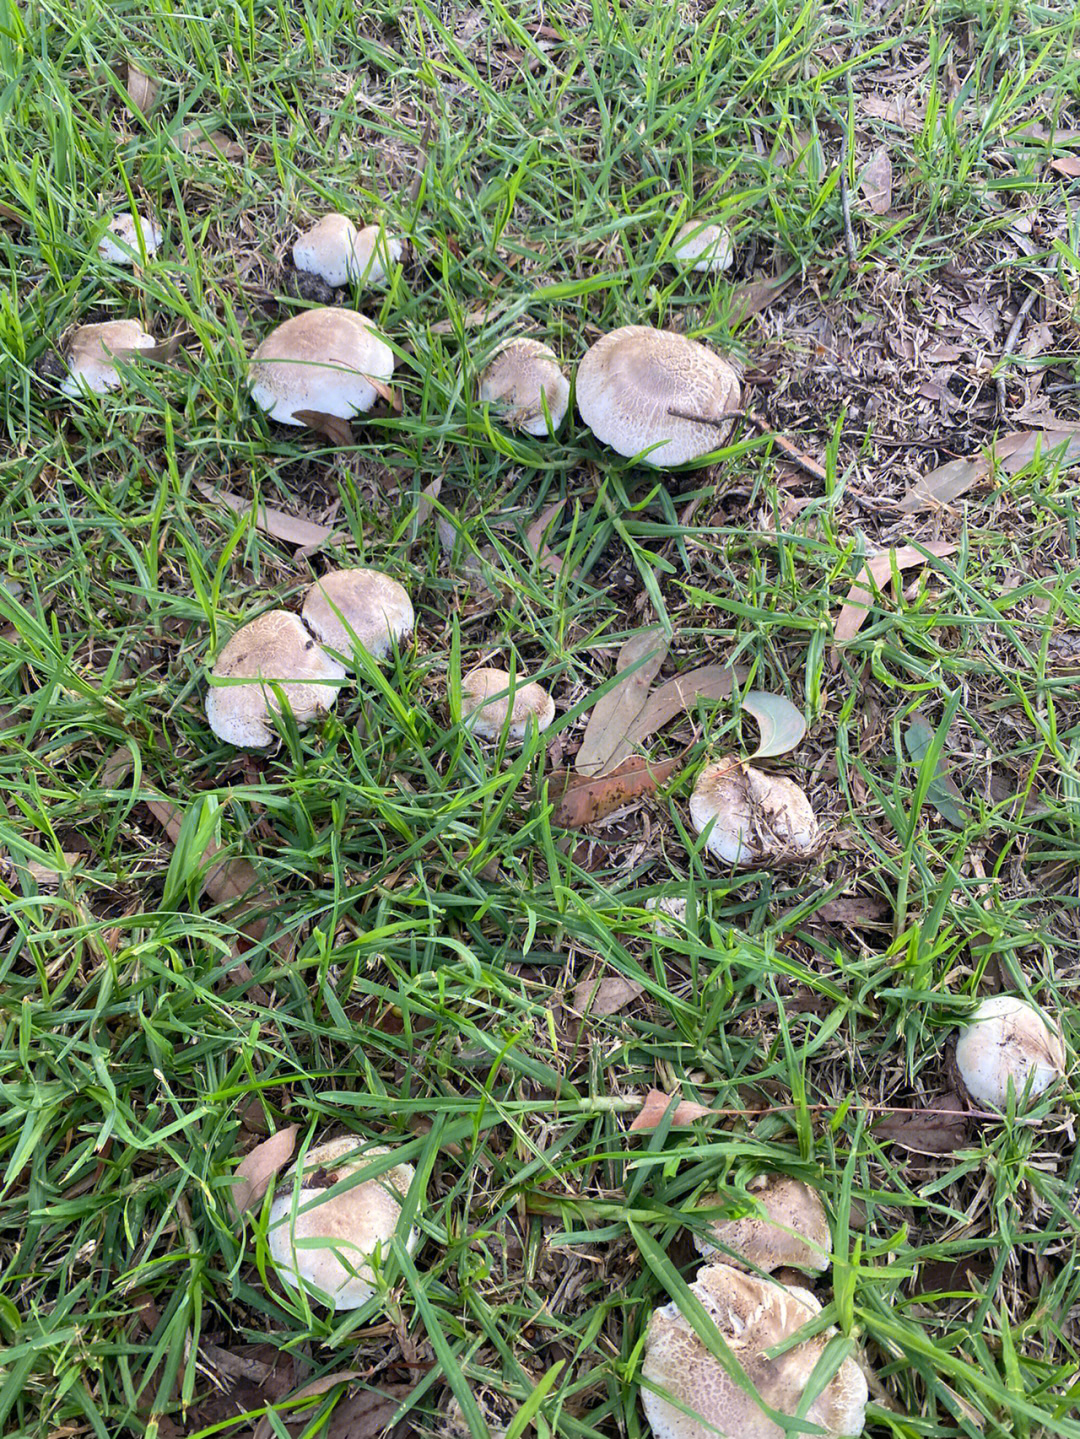 求问这种野蘑菇可以吃吗